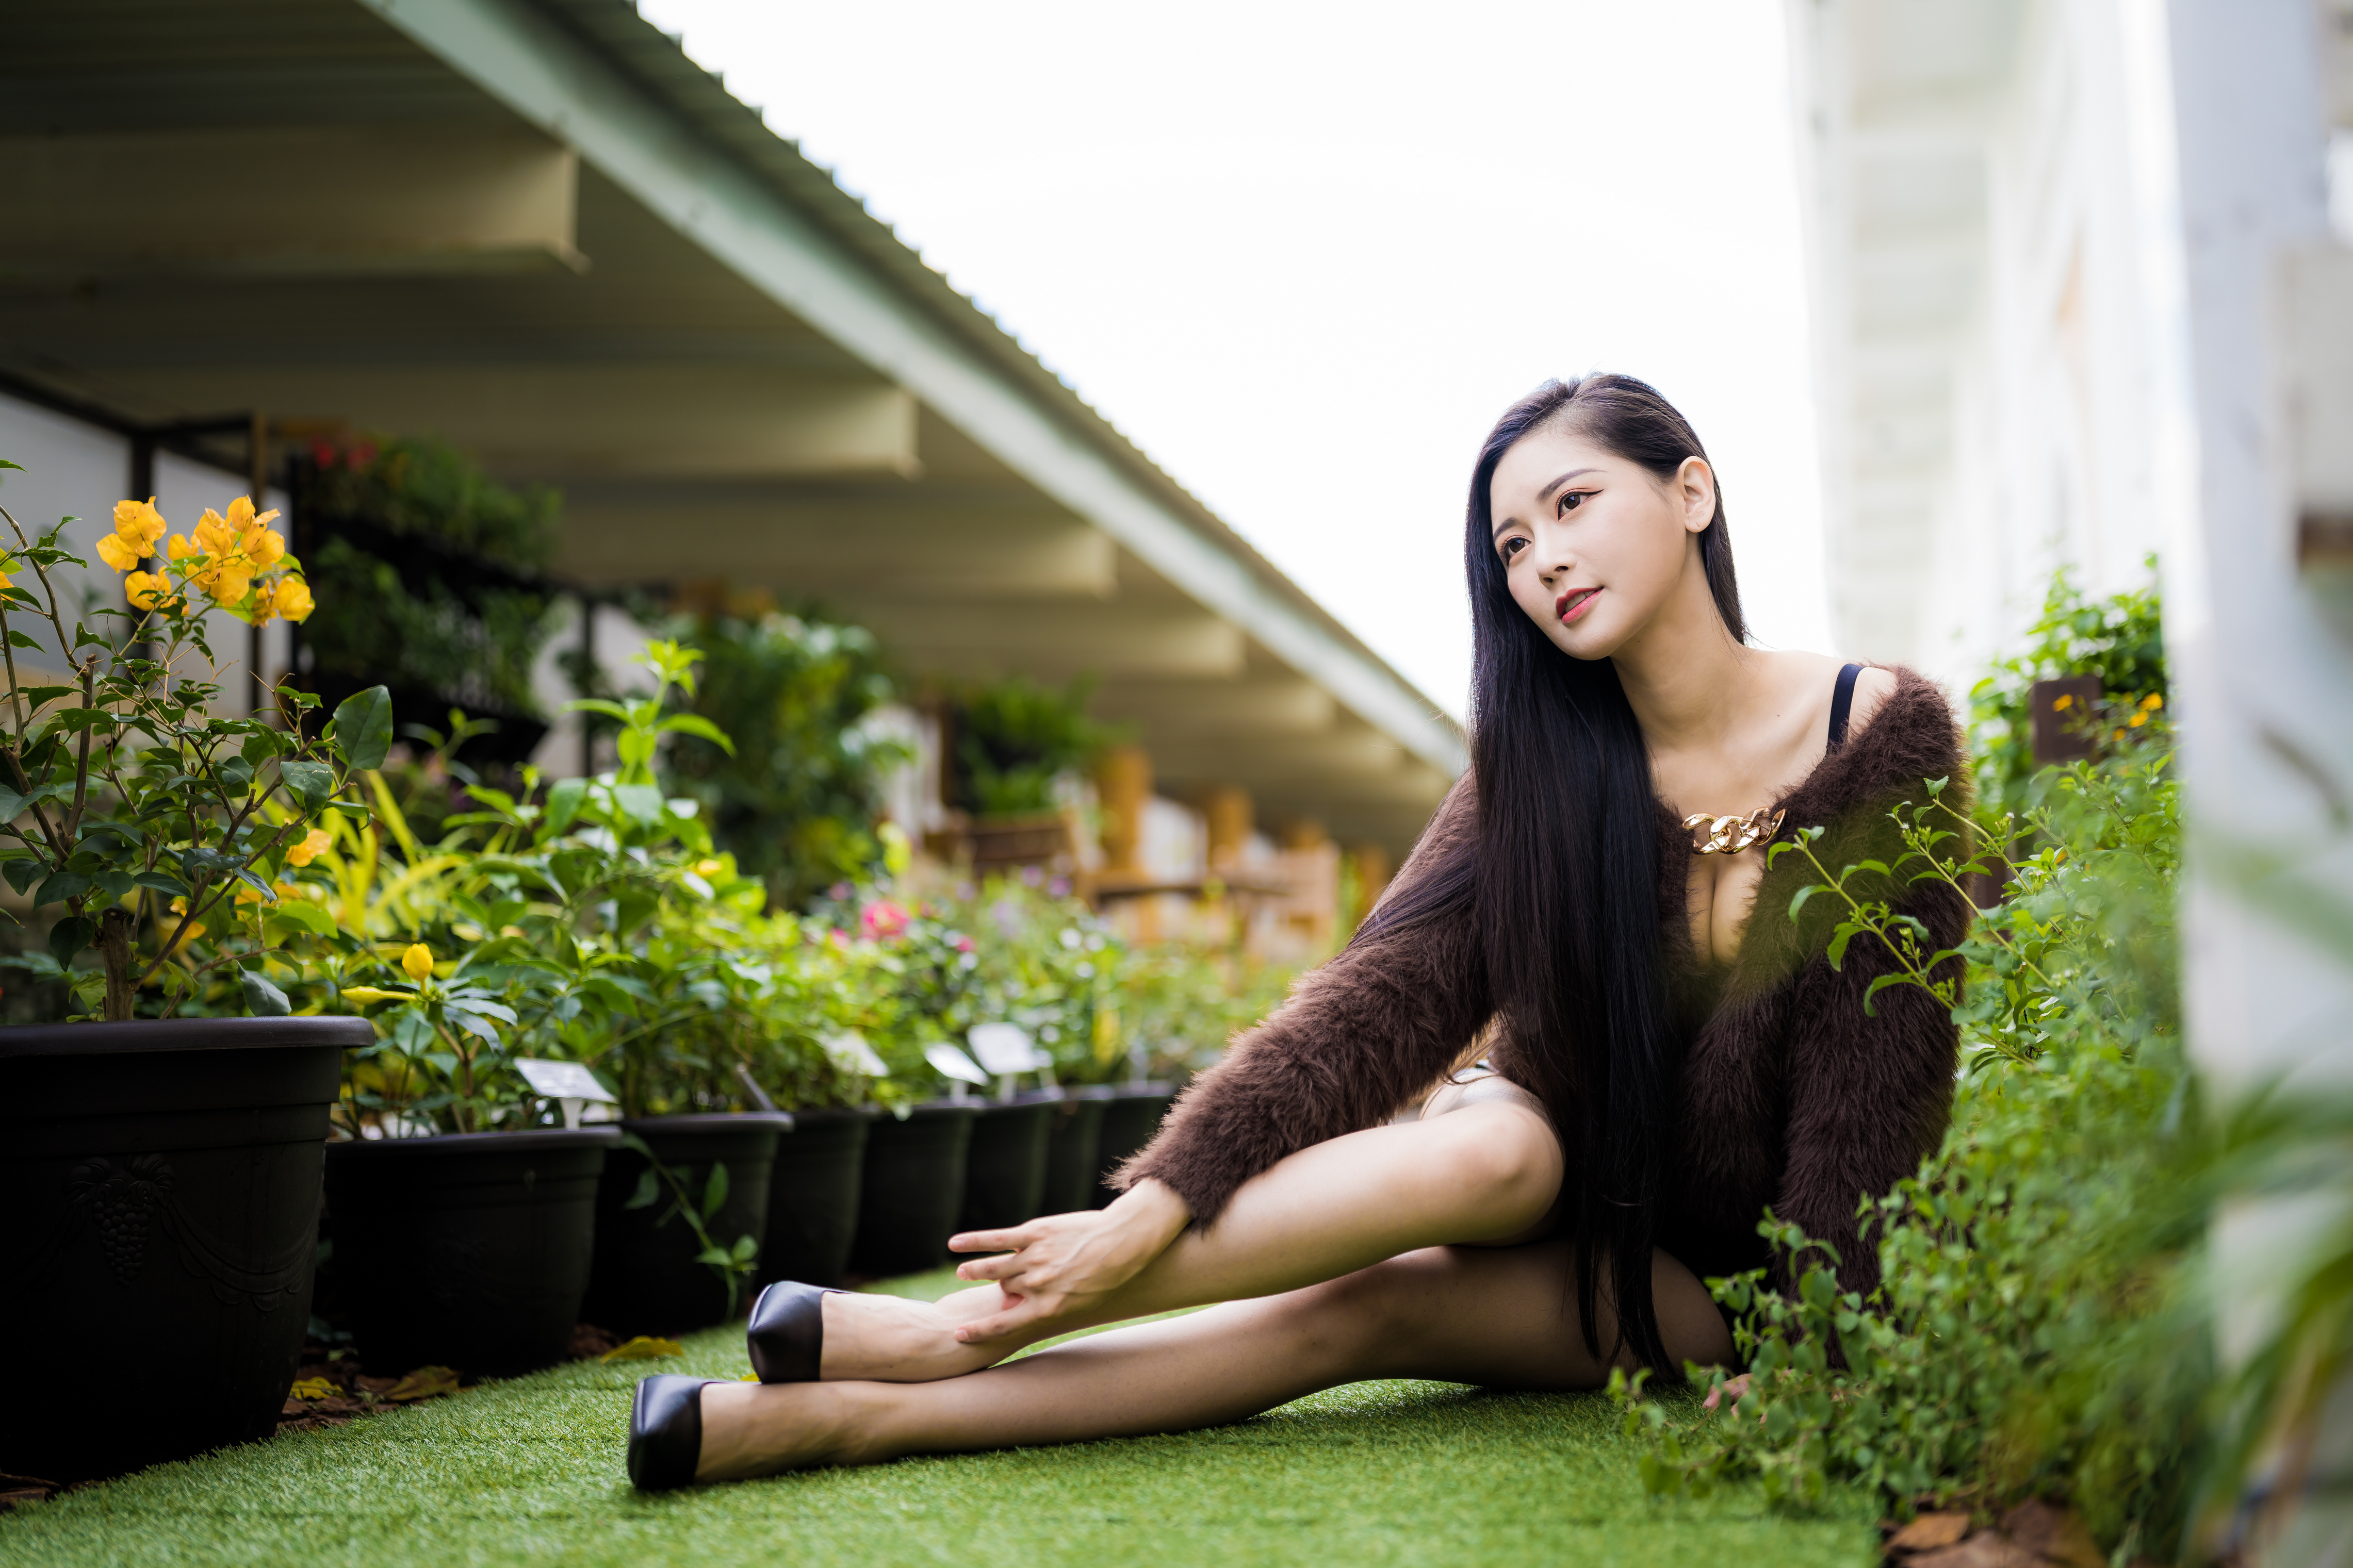 People 4562x3041 Asian model women long hair dark hair sitting depth of field bridge flowerpot plants black heels pullover cleavage flowers brunette